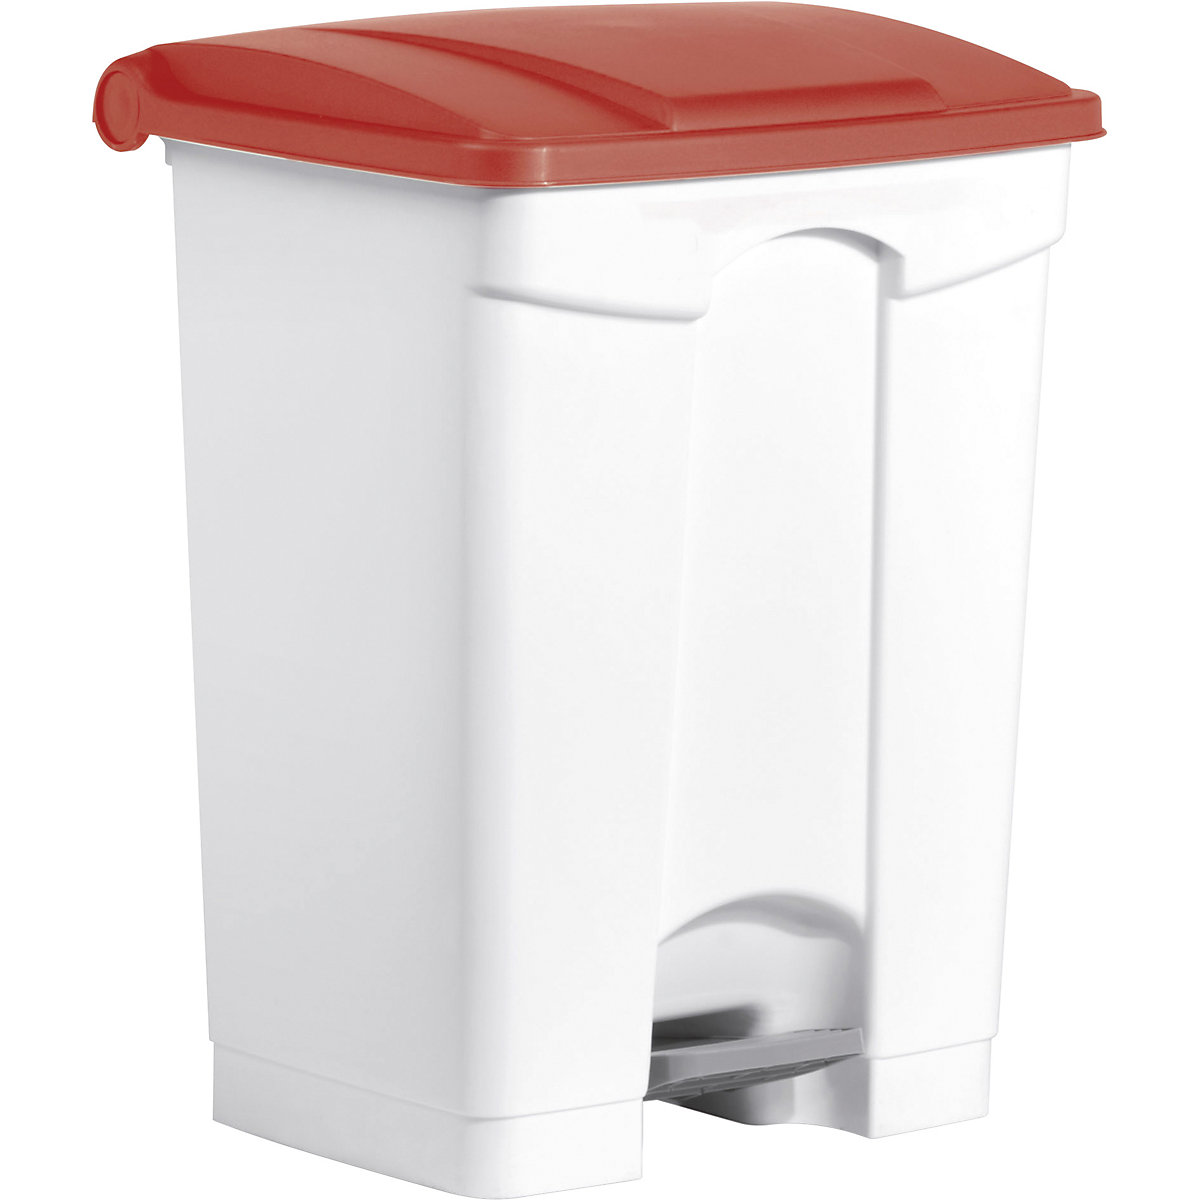 Spremnik za otpad s papučicom – helit, volumen 70 l, ŠxVxD 500 x 670 x 410 mm, u bijeloj boji, poklopac u crvenoj boji-4